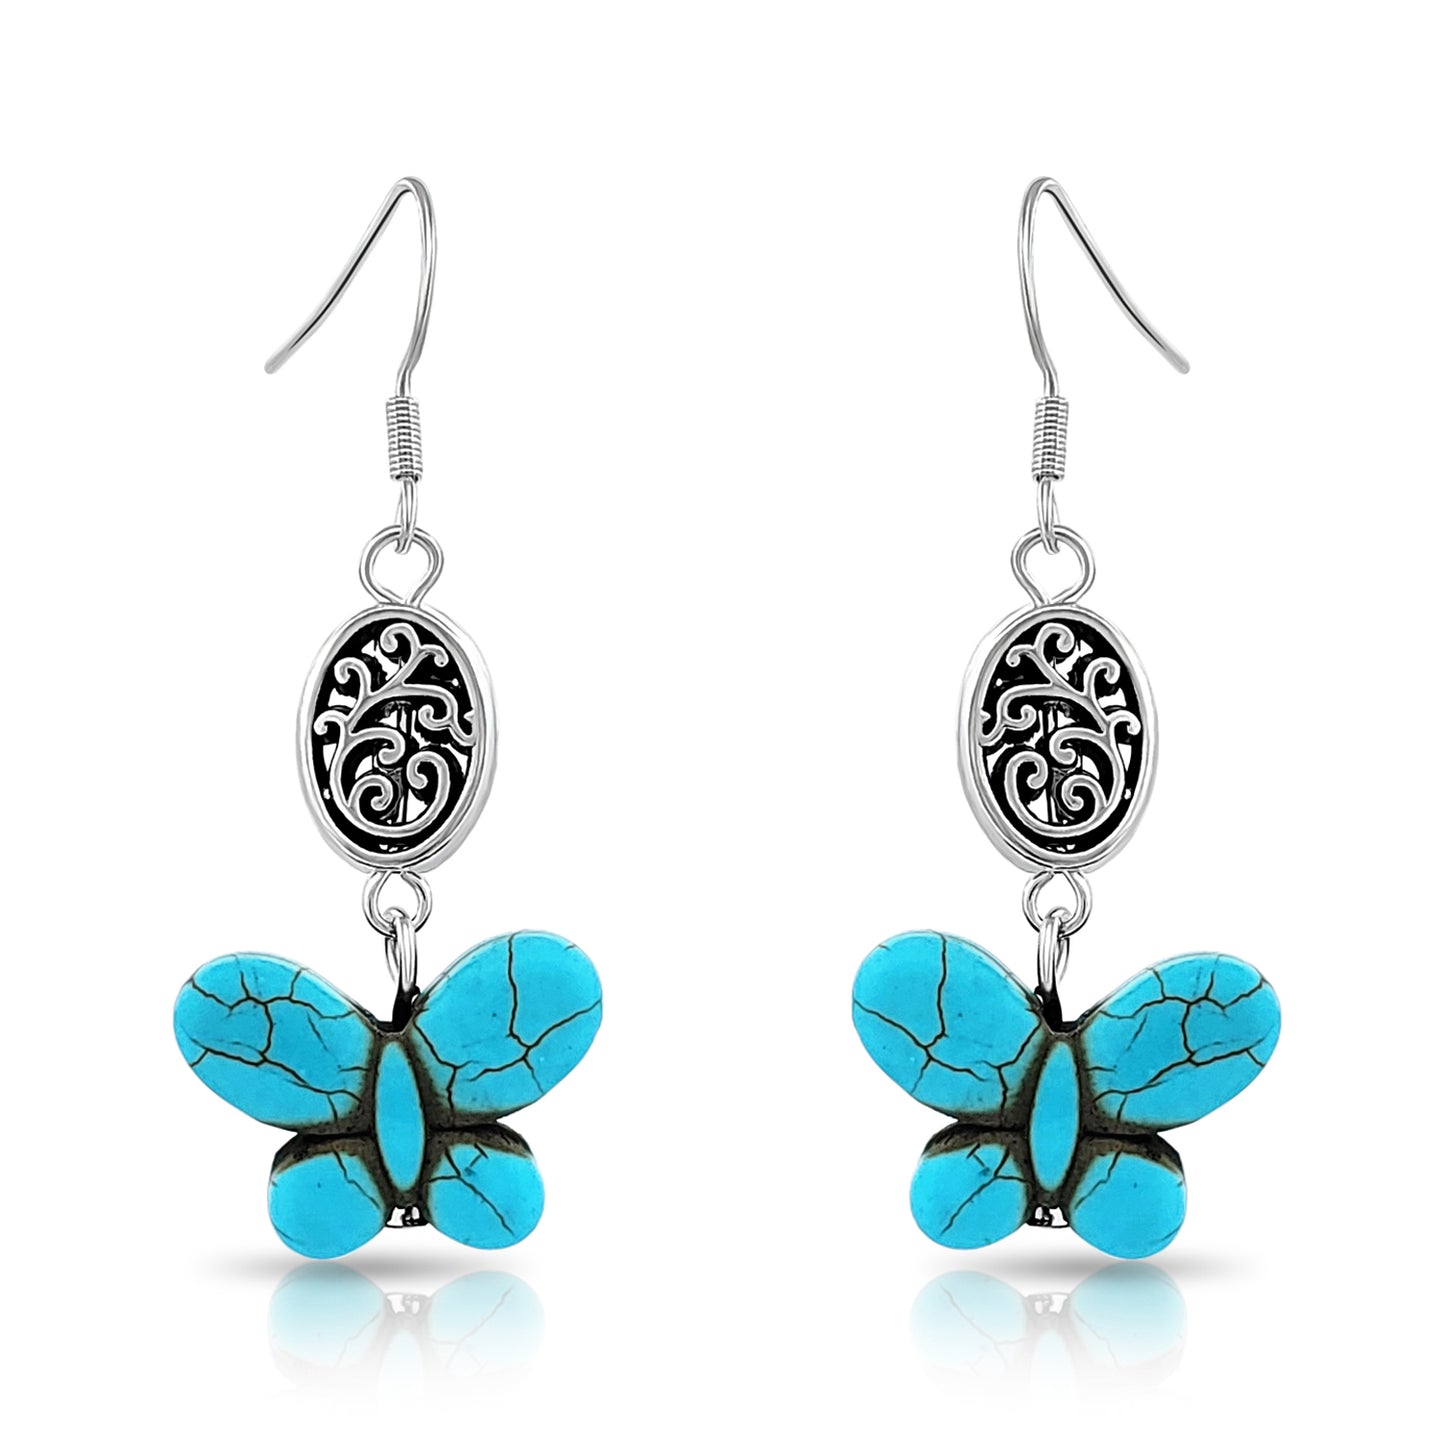 BESHEEK Silvertone and Turquoise Butterfly Filigree Dangle Earrings | Hypoallergenic Boho Beach Gala Wedding Style Fashion Earrings